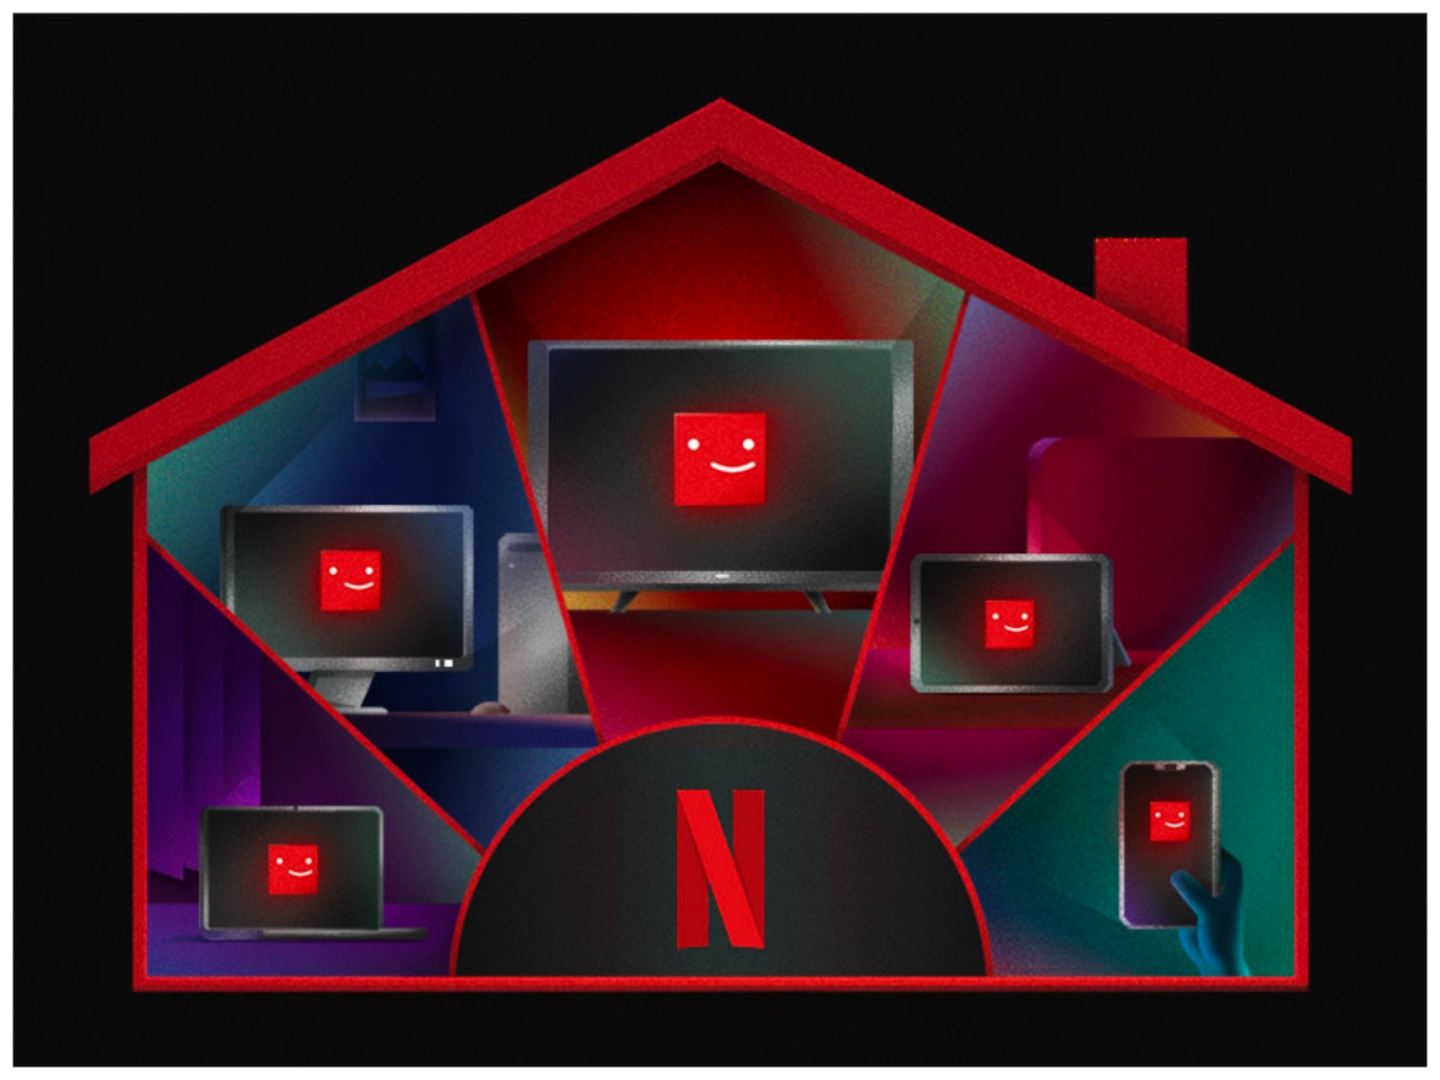 Netflix inicia cobrança de taxa de R$ 12,90 por usuário extra no